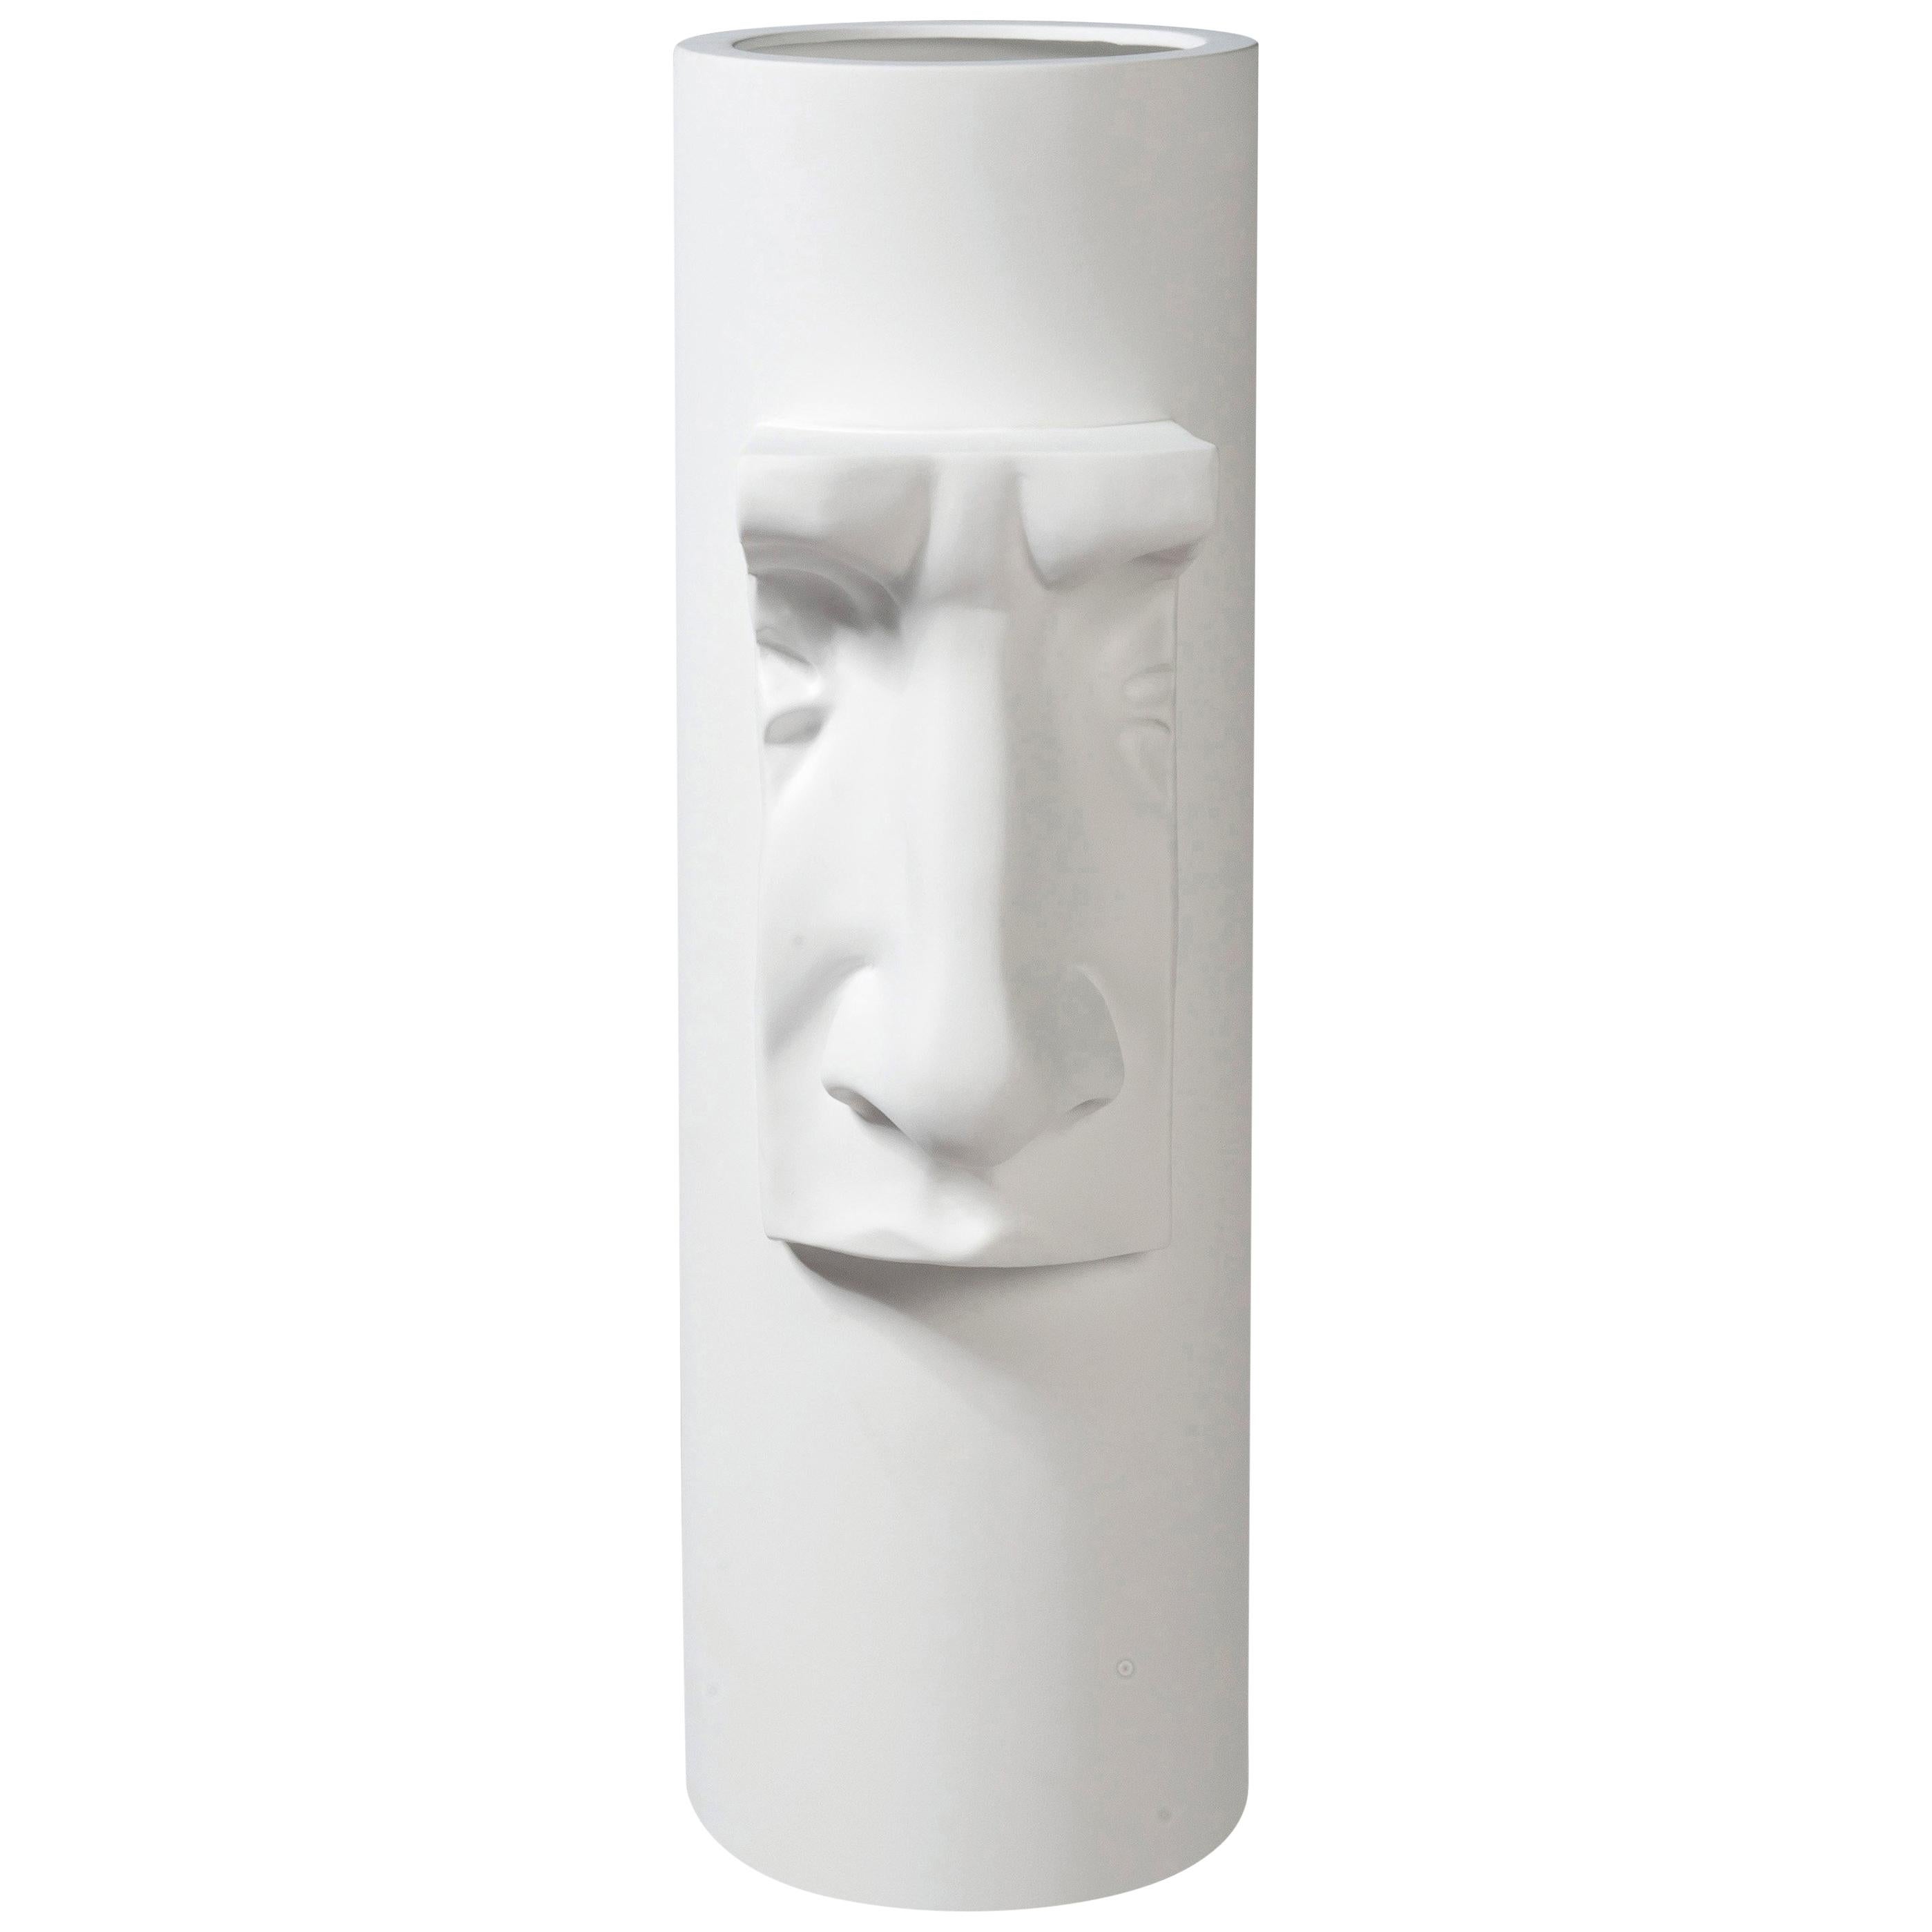 Vase « David by Michelangelo » Nose Small en céramique blanc mat, Italie